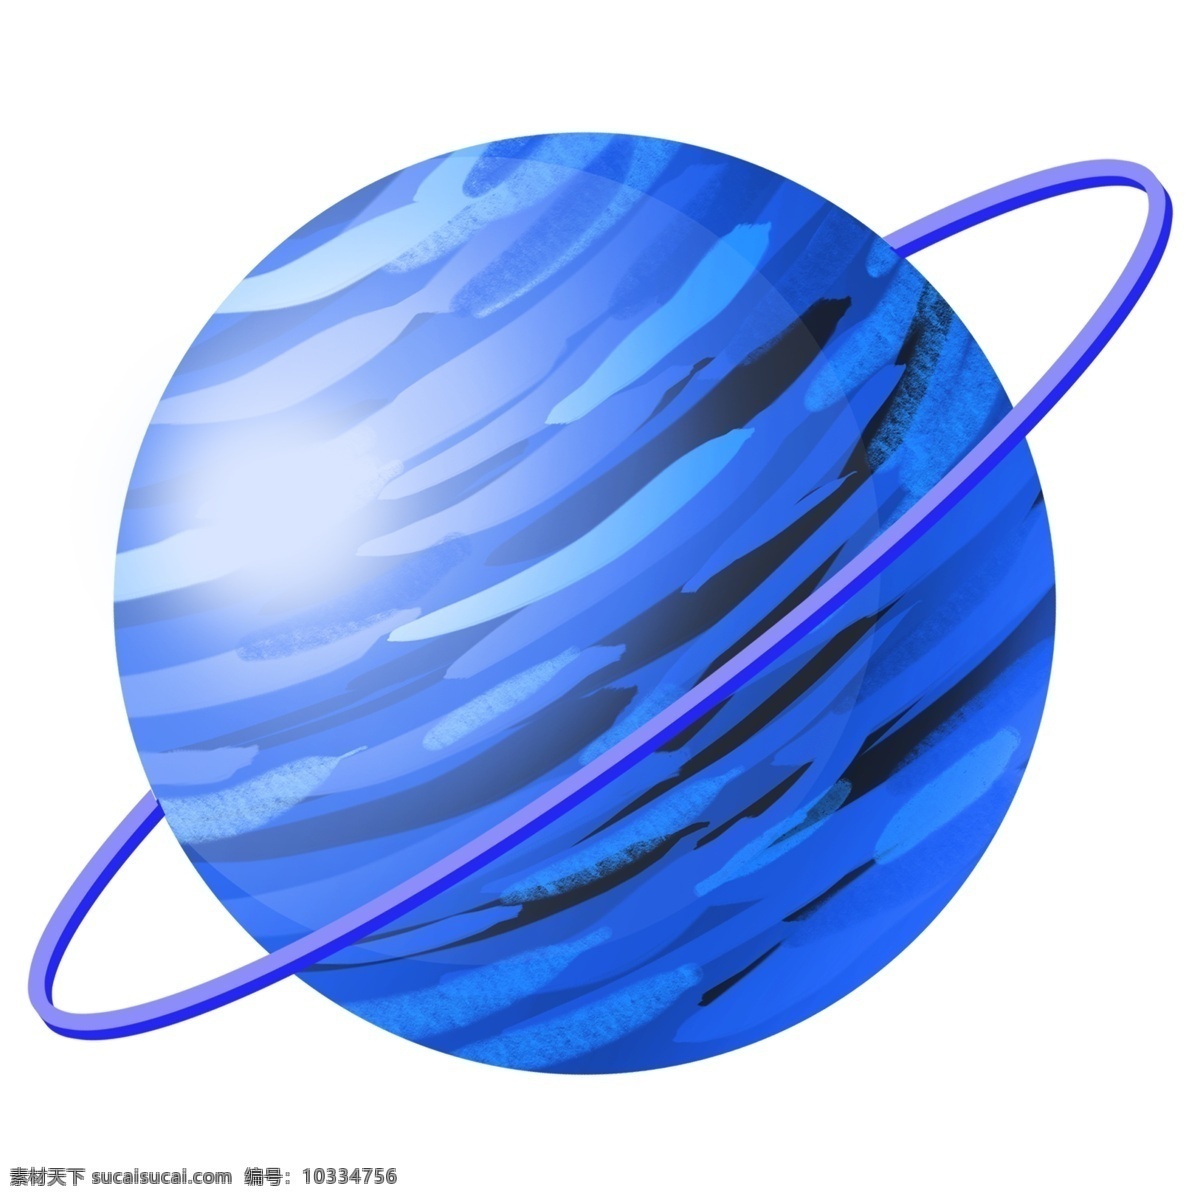 航天 日 卫星 插画 蓝色的卫星 卡通的插画 航天日 航天插画 航天器具 航天用具 航天日卫星